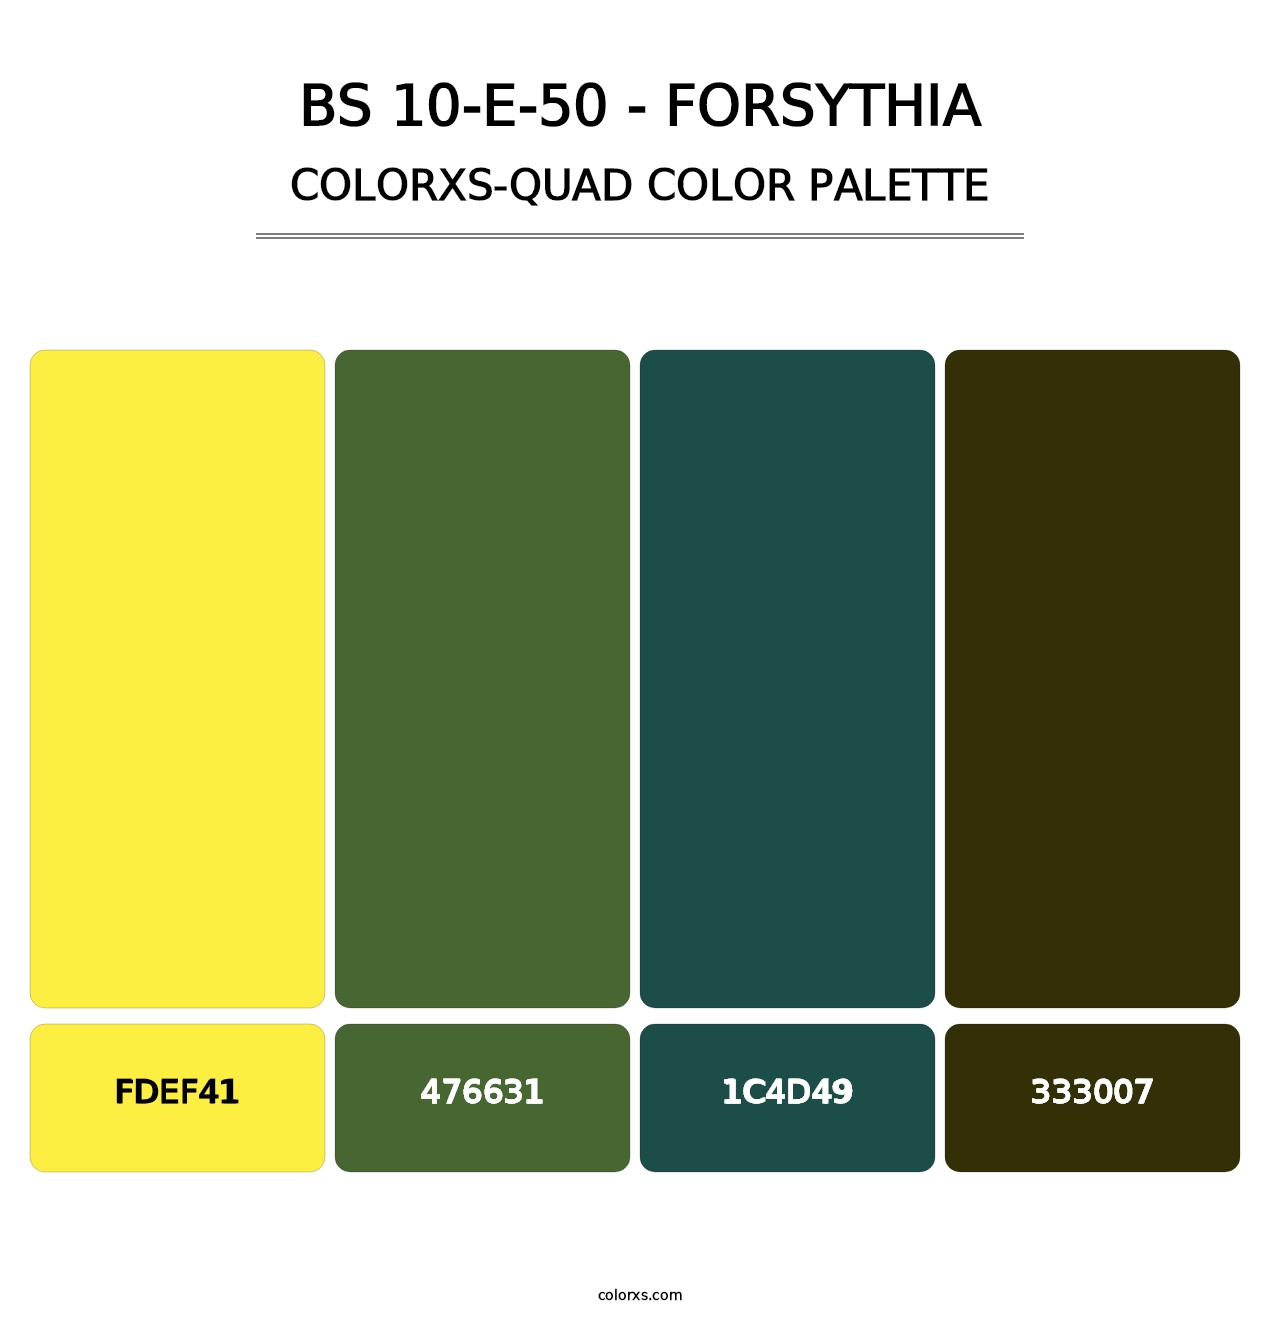 BS 10-E-50 - Forsythia - Colorxs Quad Palette